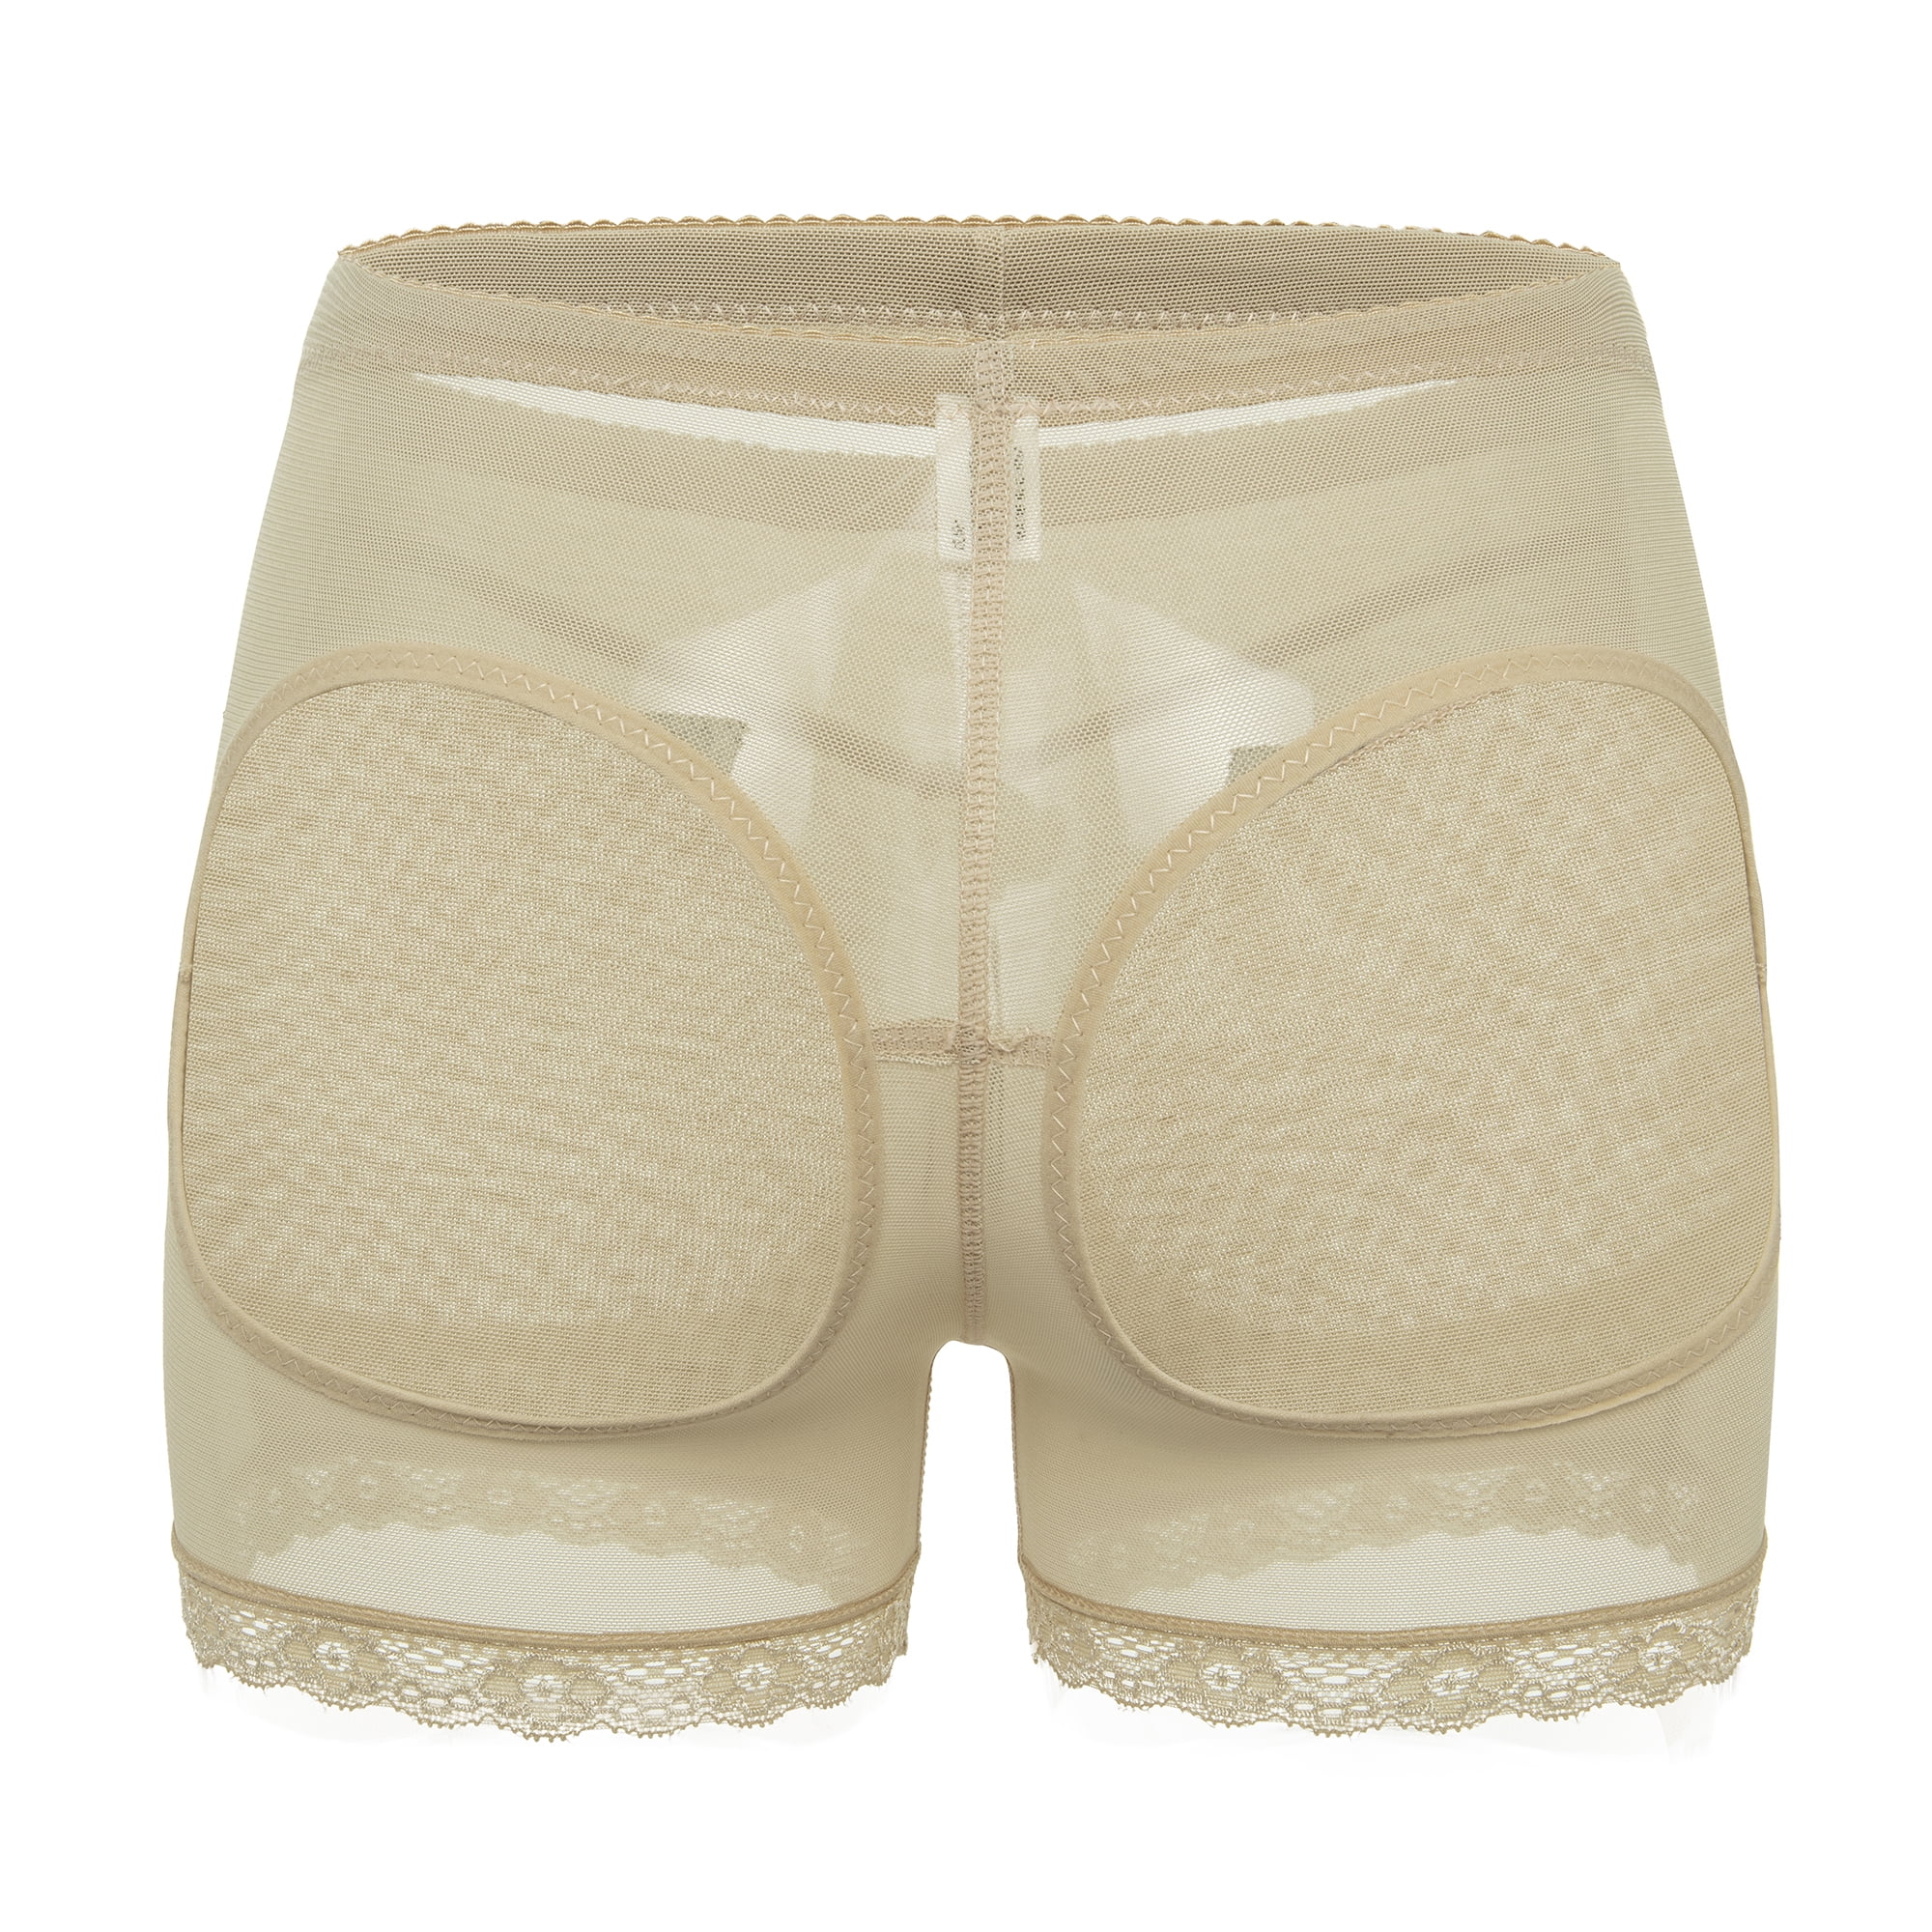 New Booster Panties - Creme Caramel - Butt Enhancing Underwear for Women |  Body Shaper 